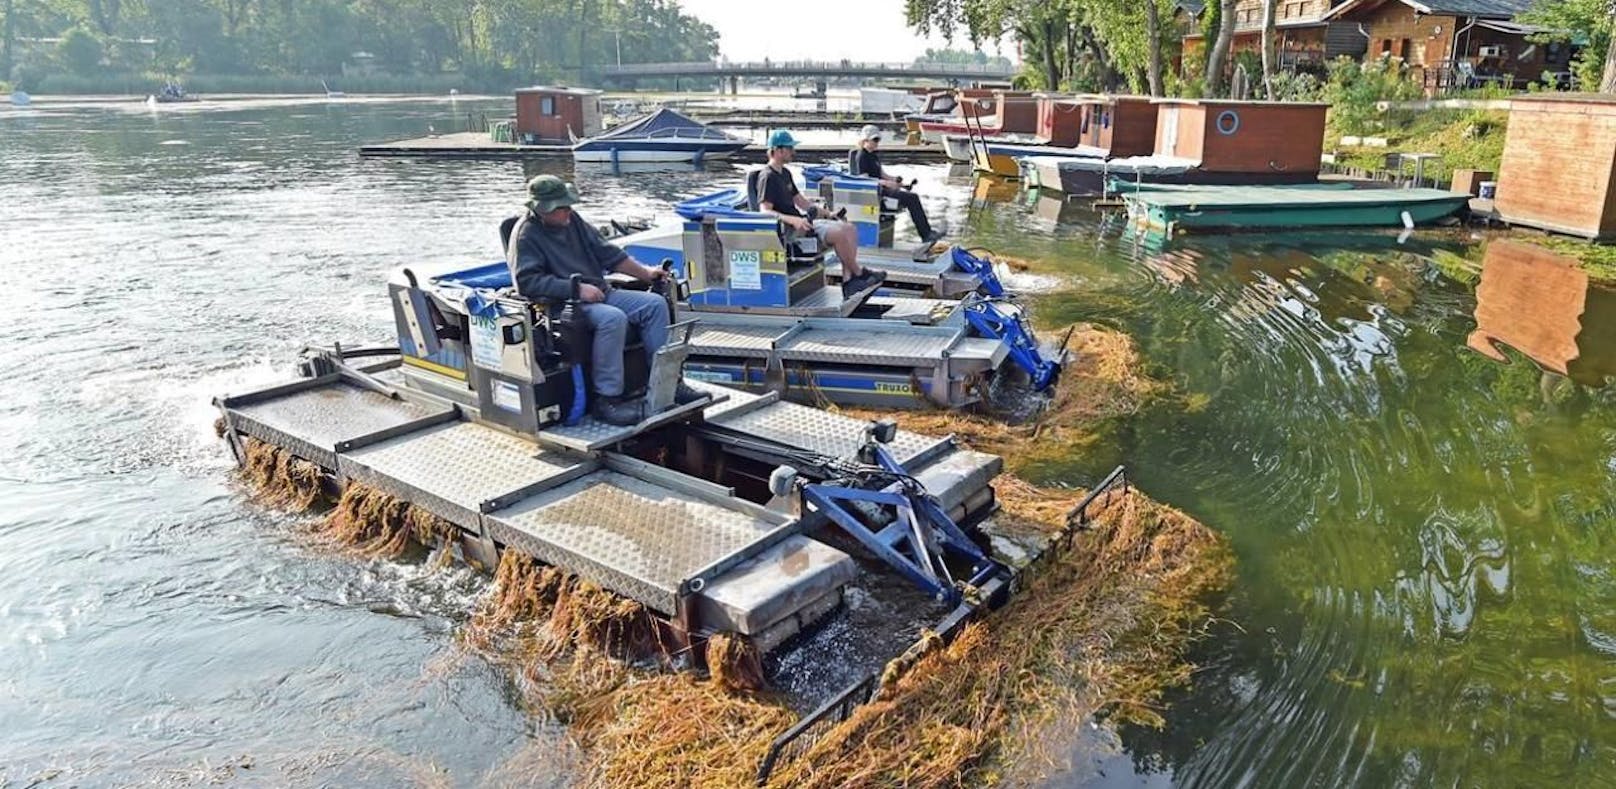 Bis zu 25 Mähboote sind jährlich auf der Alten Donau gegen stark wuchernde Wasserpflanzen im Einsatz. Im Jahr 2021 wurden 1.900 Tonnen aus dem Wasser gemäht und gefischt.